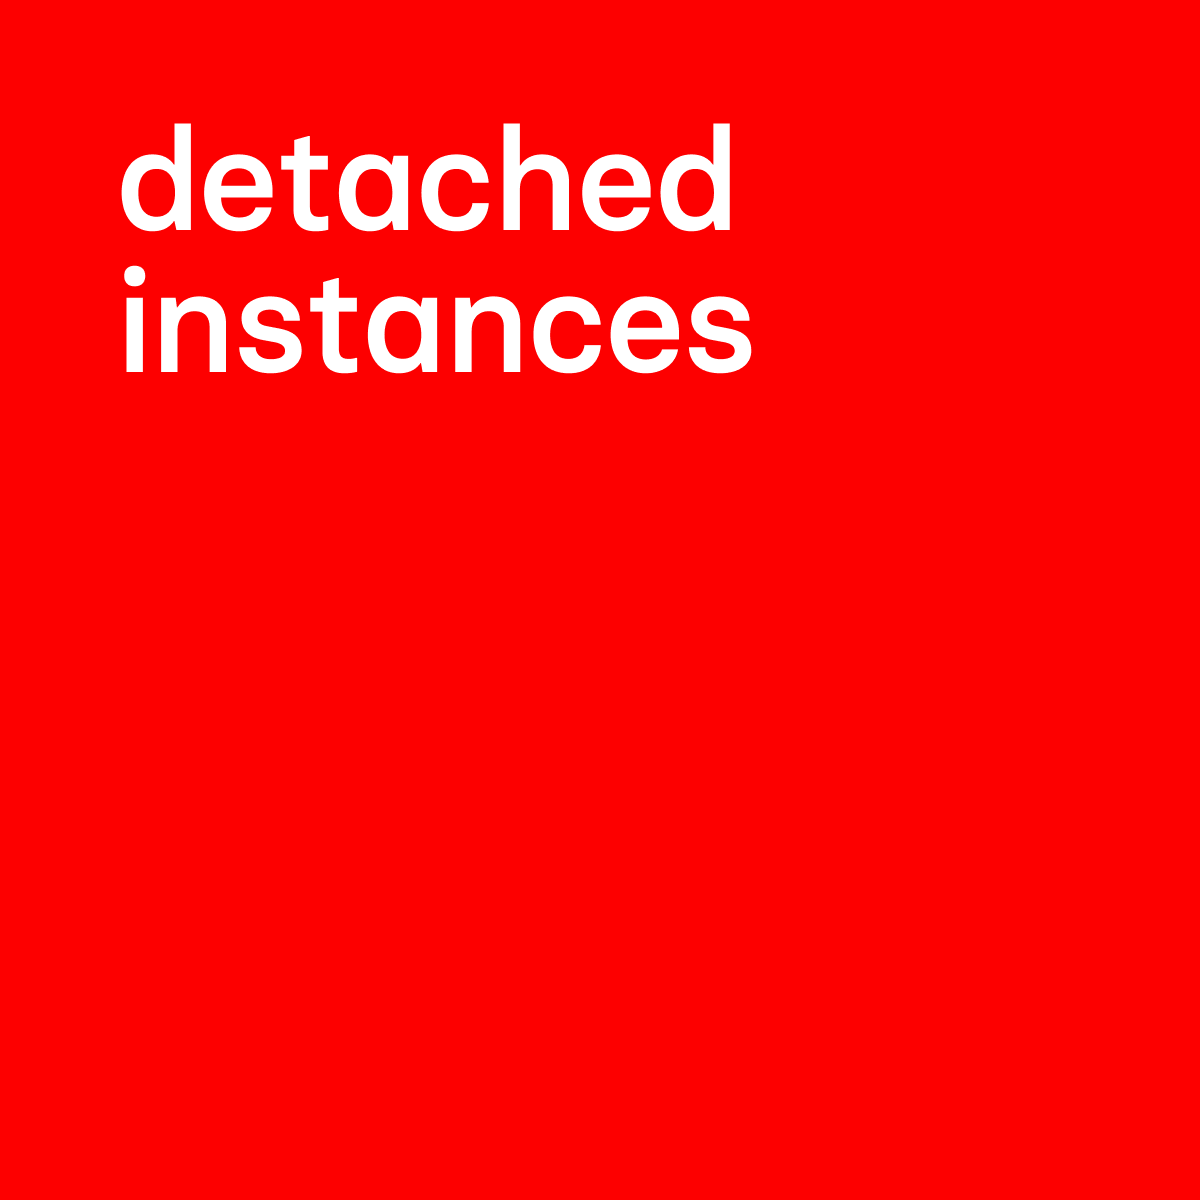 Detached Instances